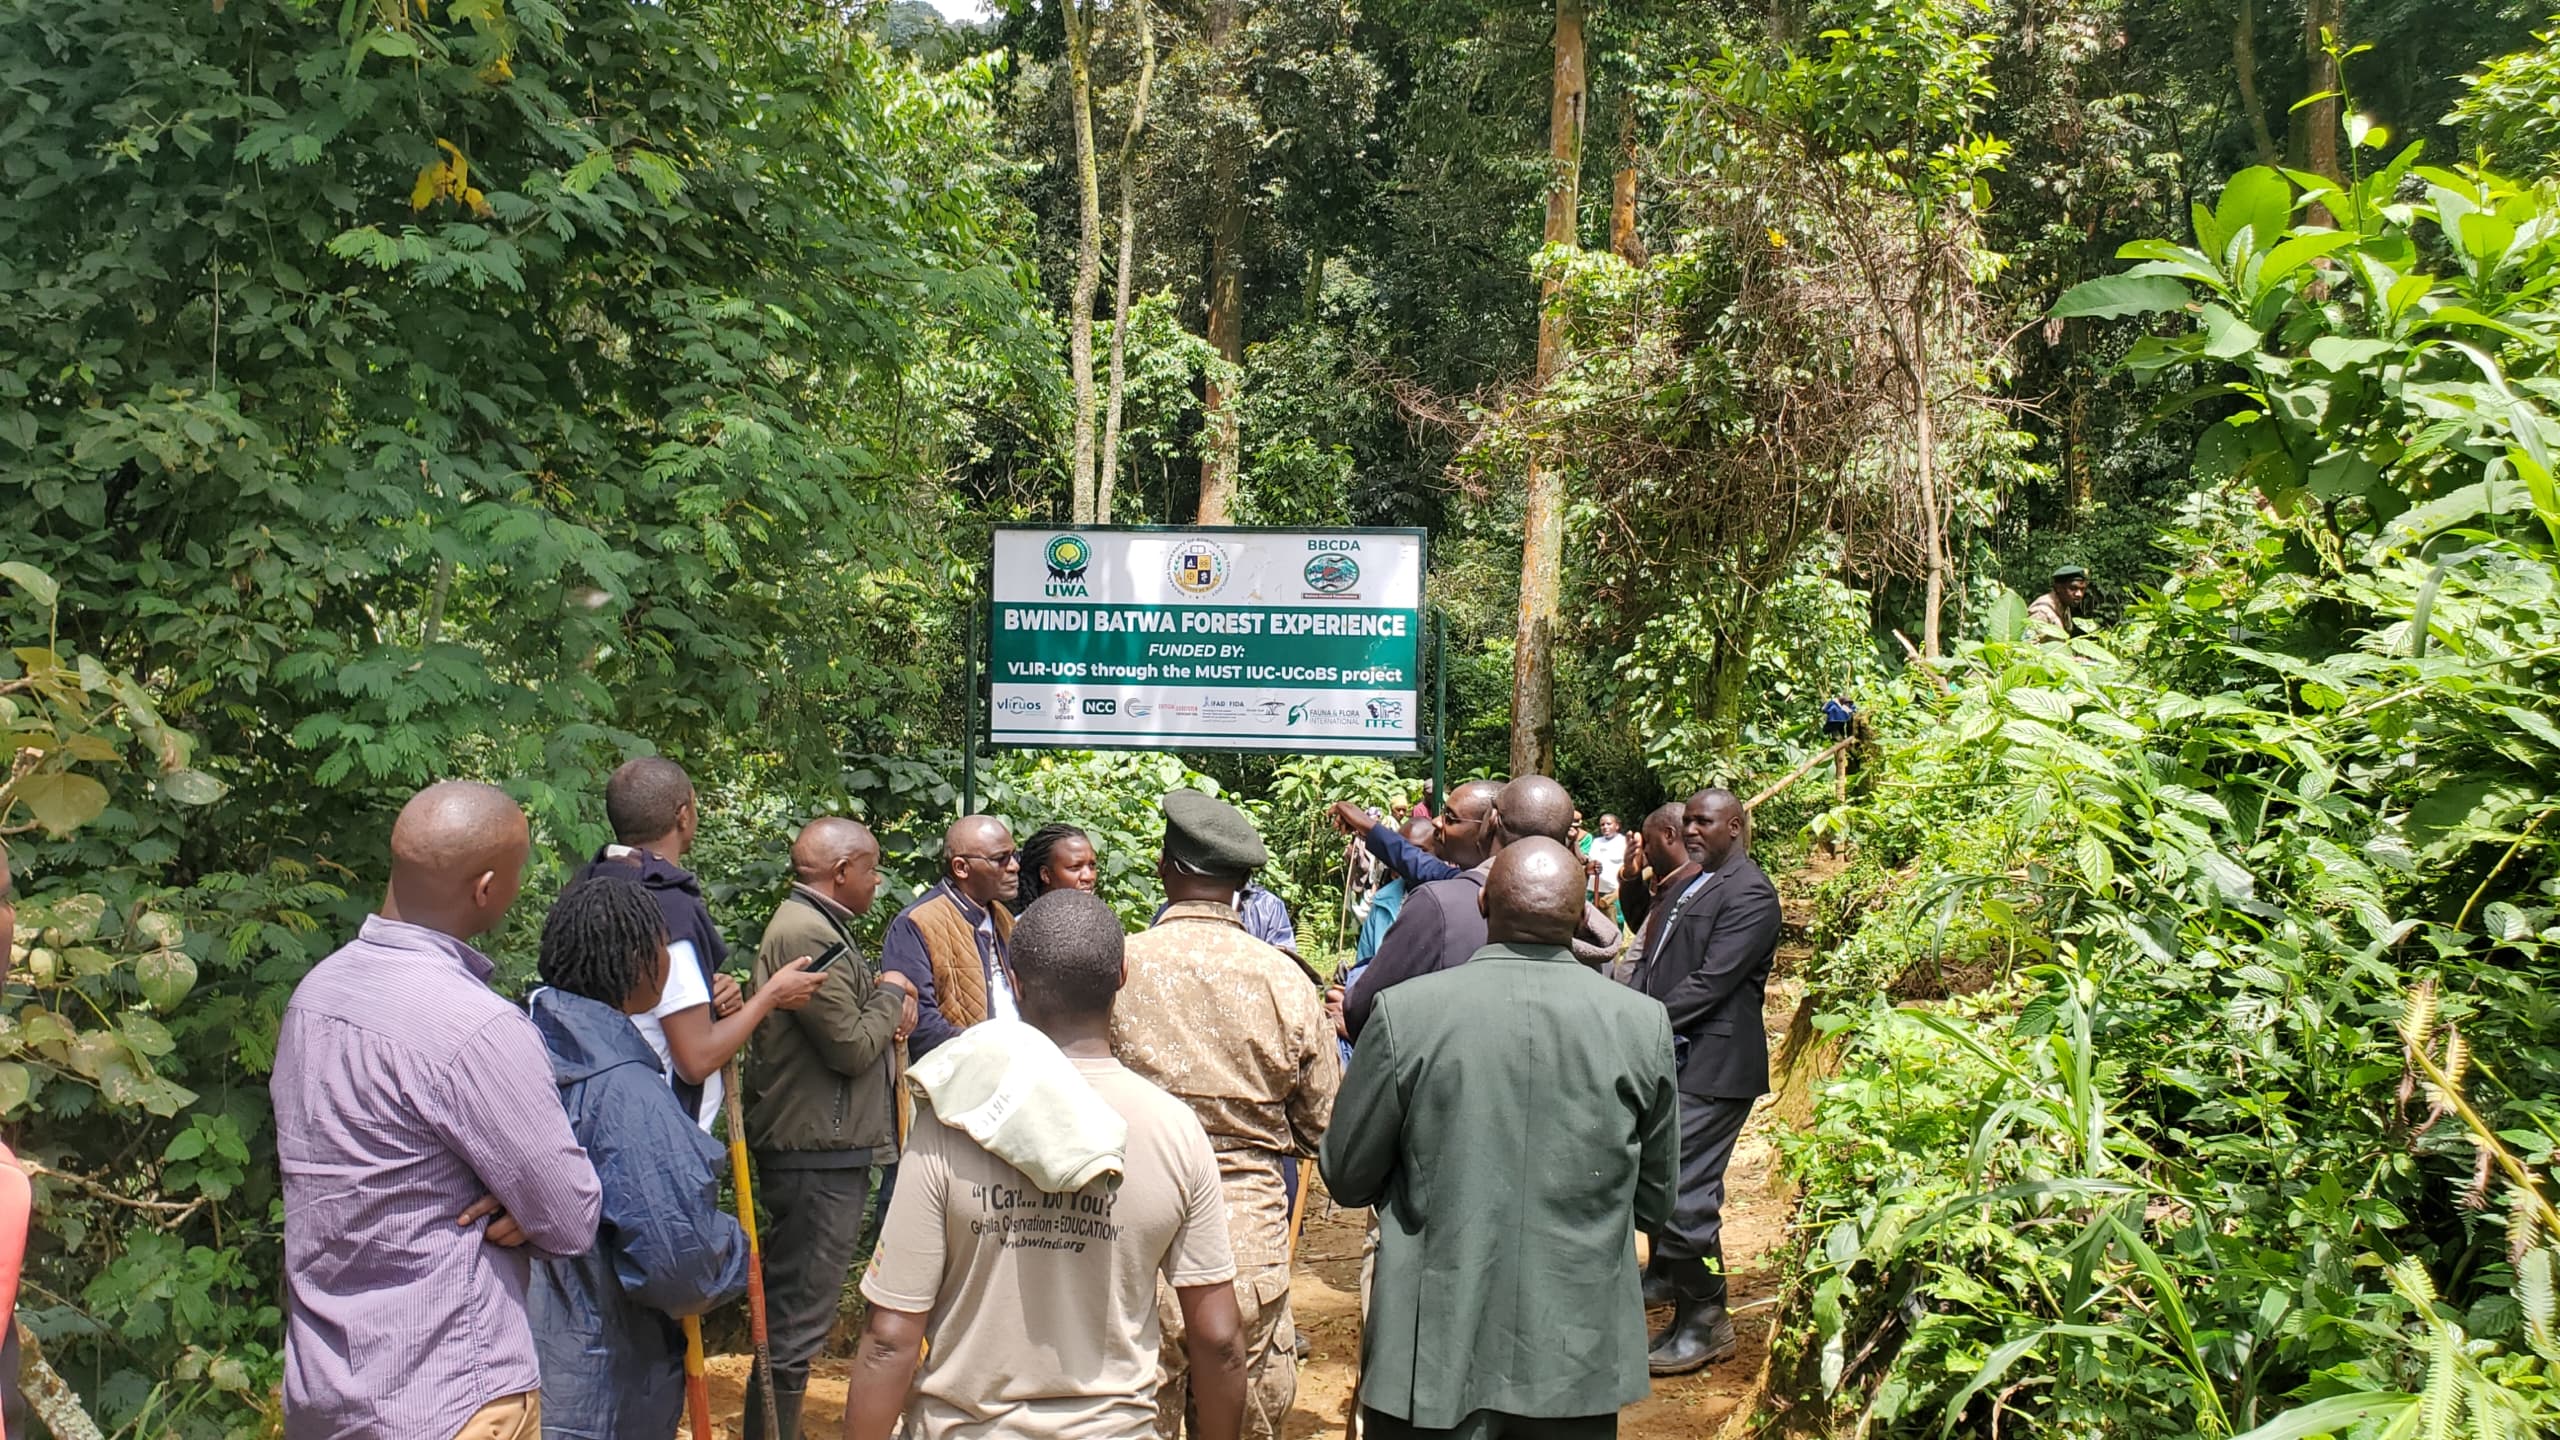 Bwindi Batwa Forest Experience Initiative launched